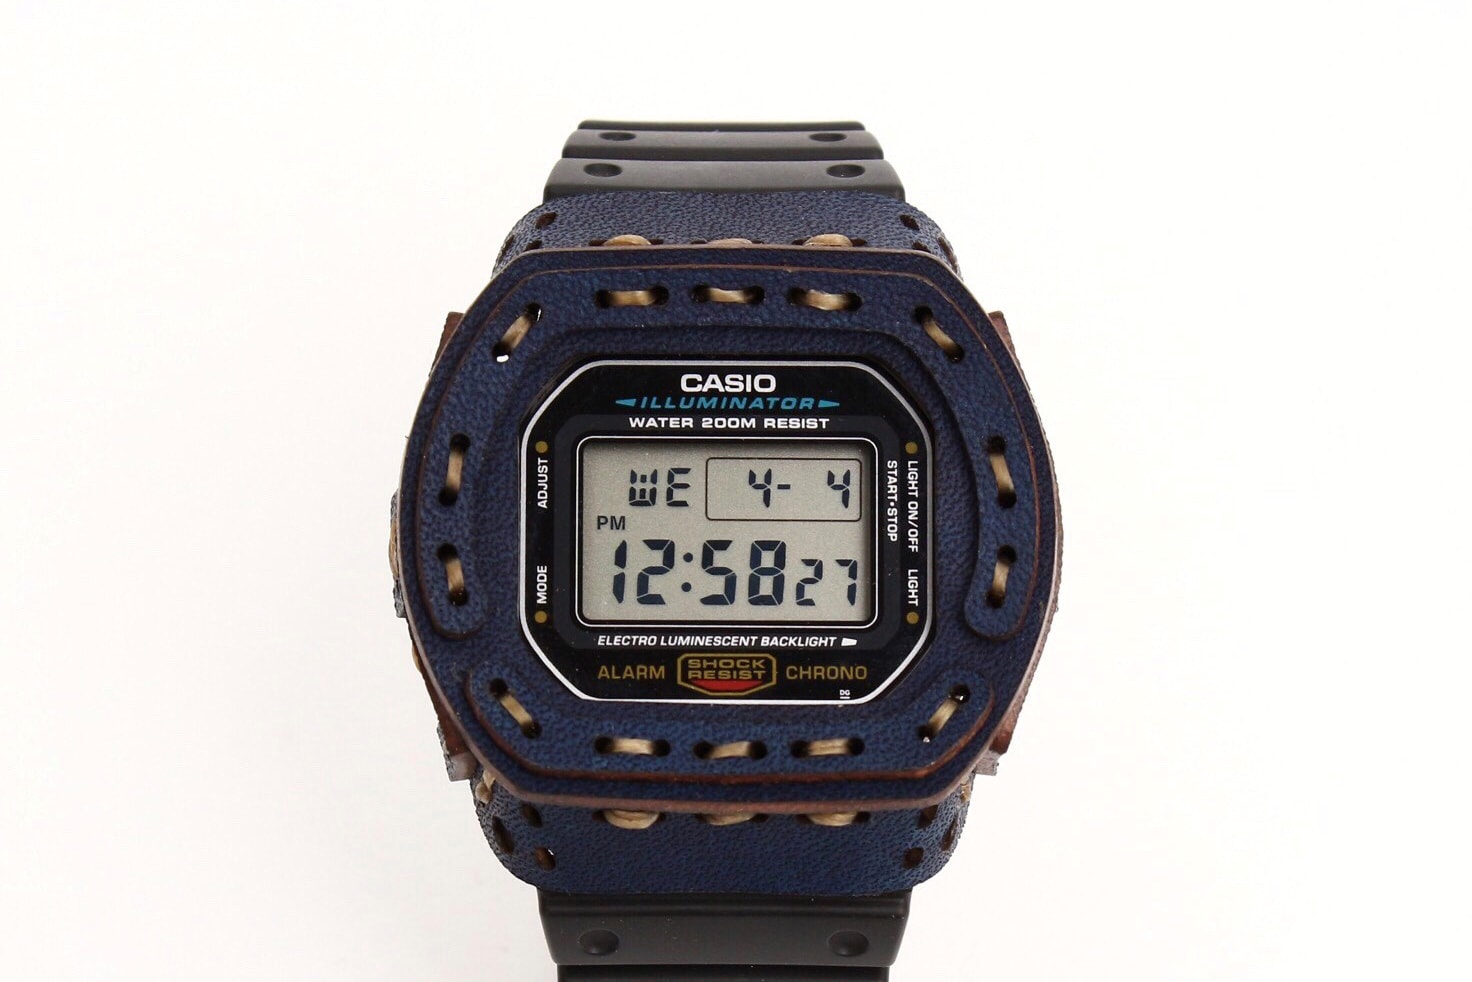 日本品牌 armadillo 打造藍染皮革手造腕錶保護套